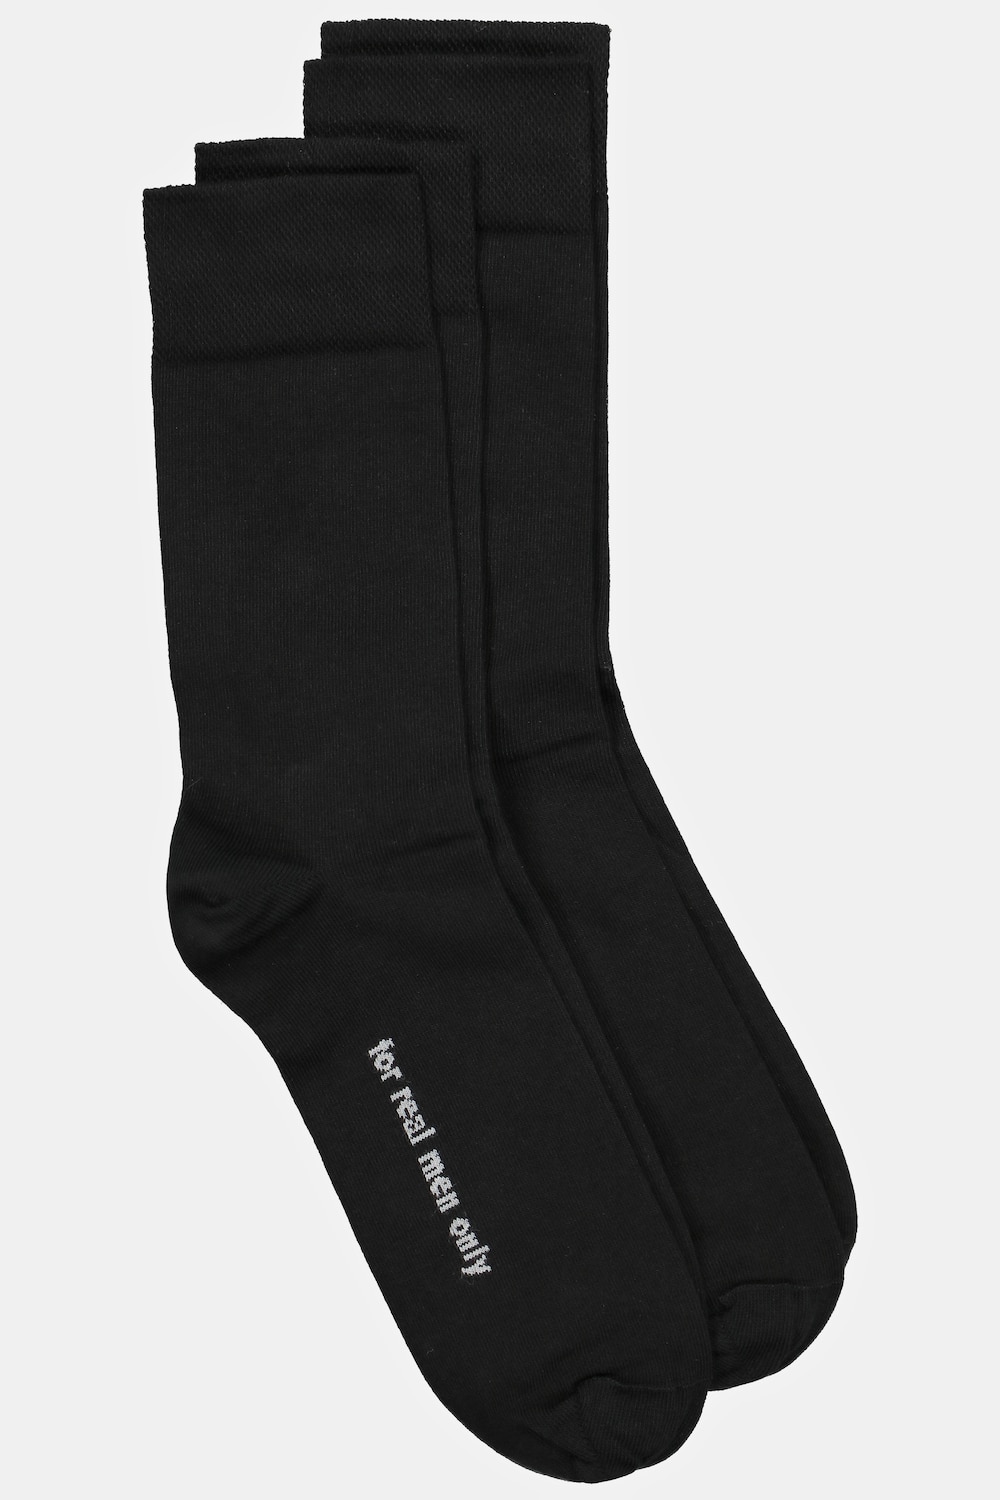 Große Größen Socken, Herren, schwarz, Größe: 47-50, Baumwolle/Synthetische Fasern, JP1880 von JP1880